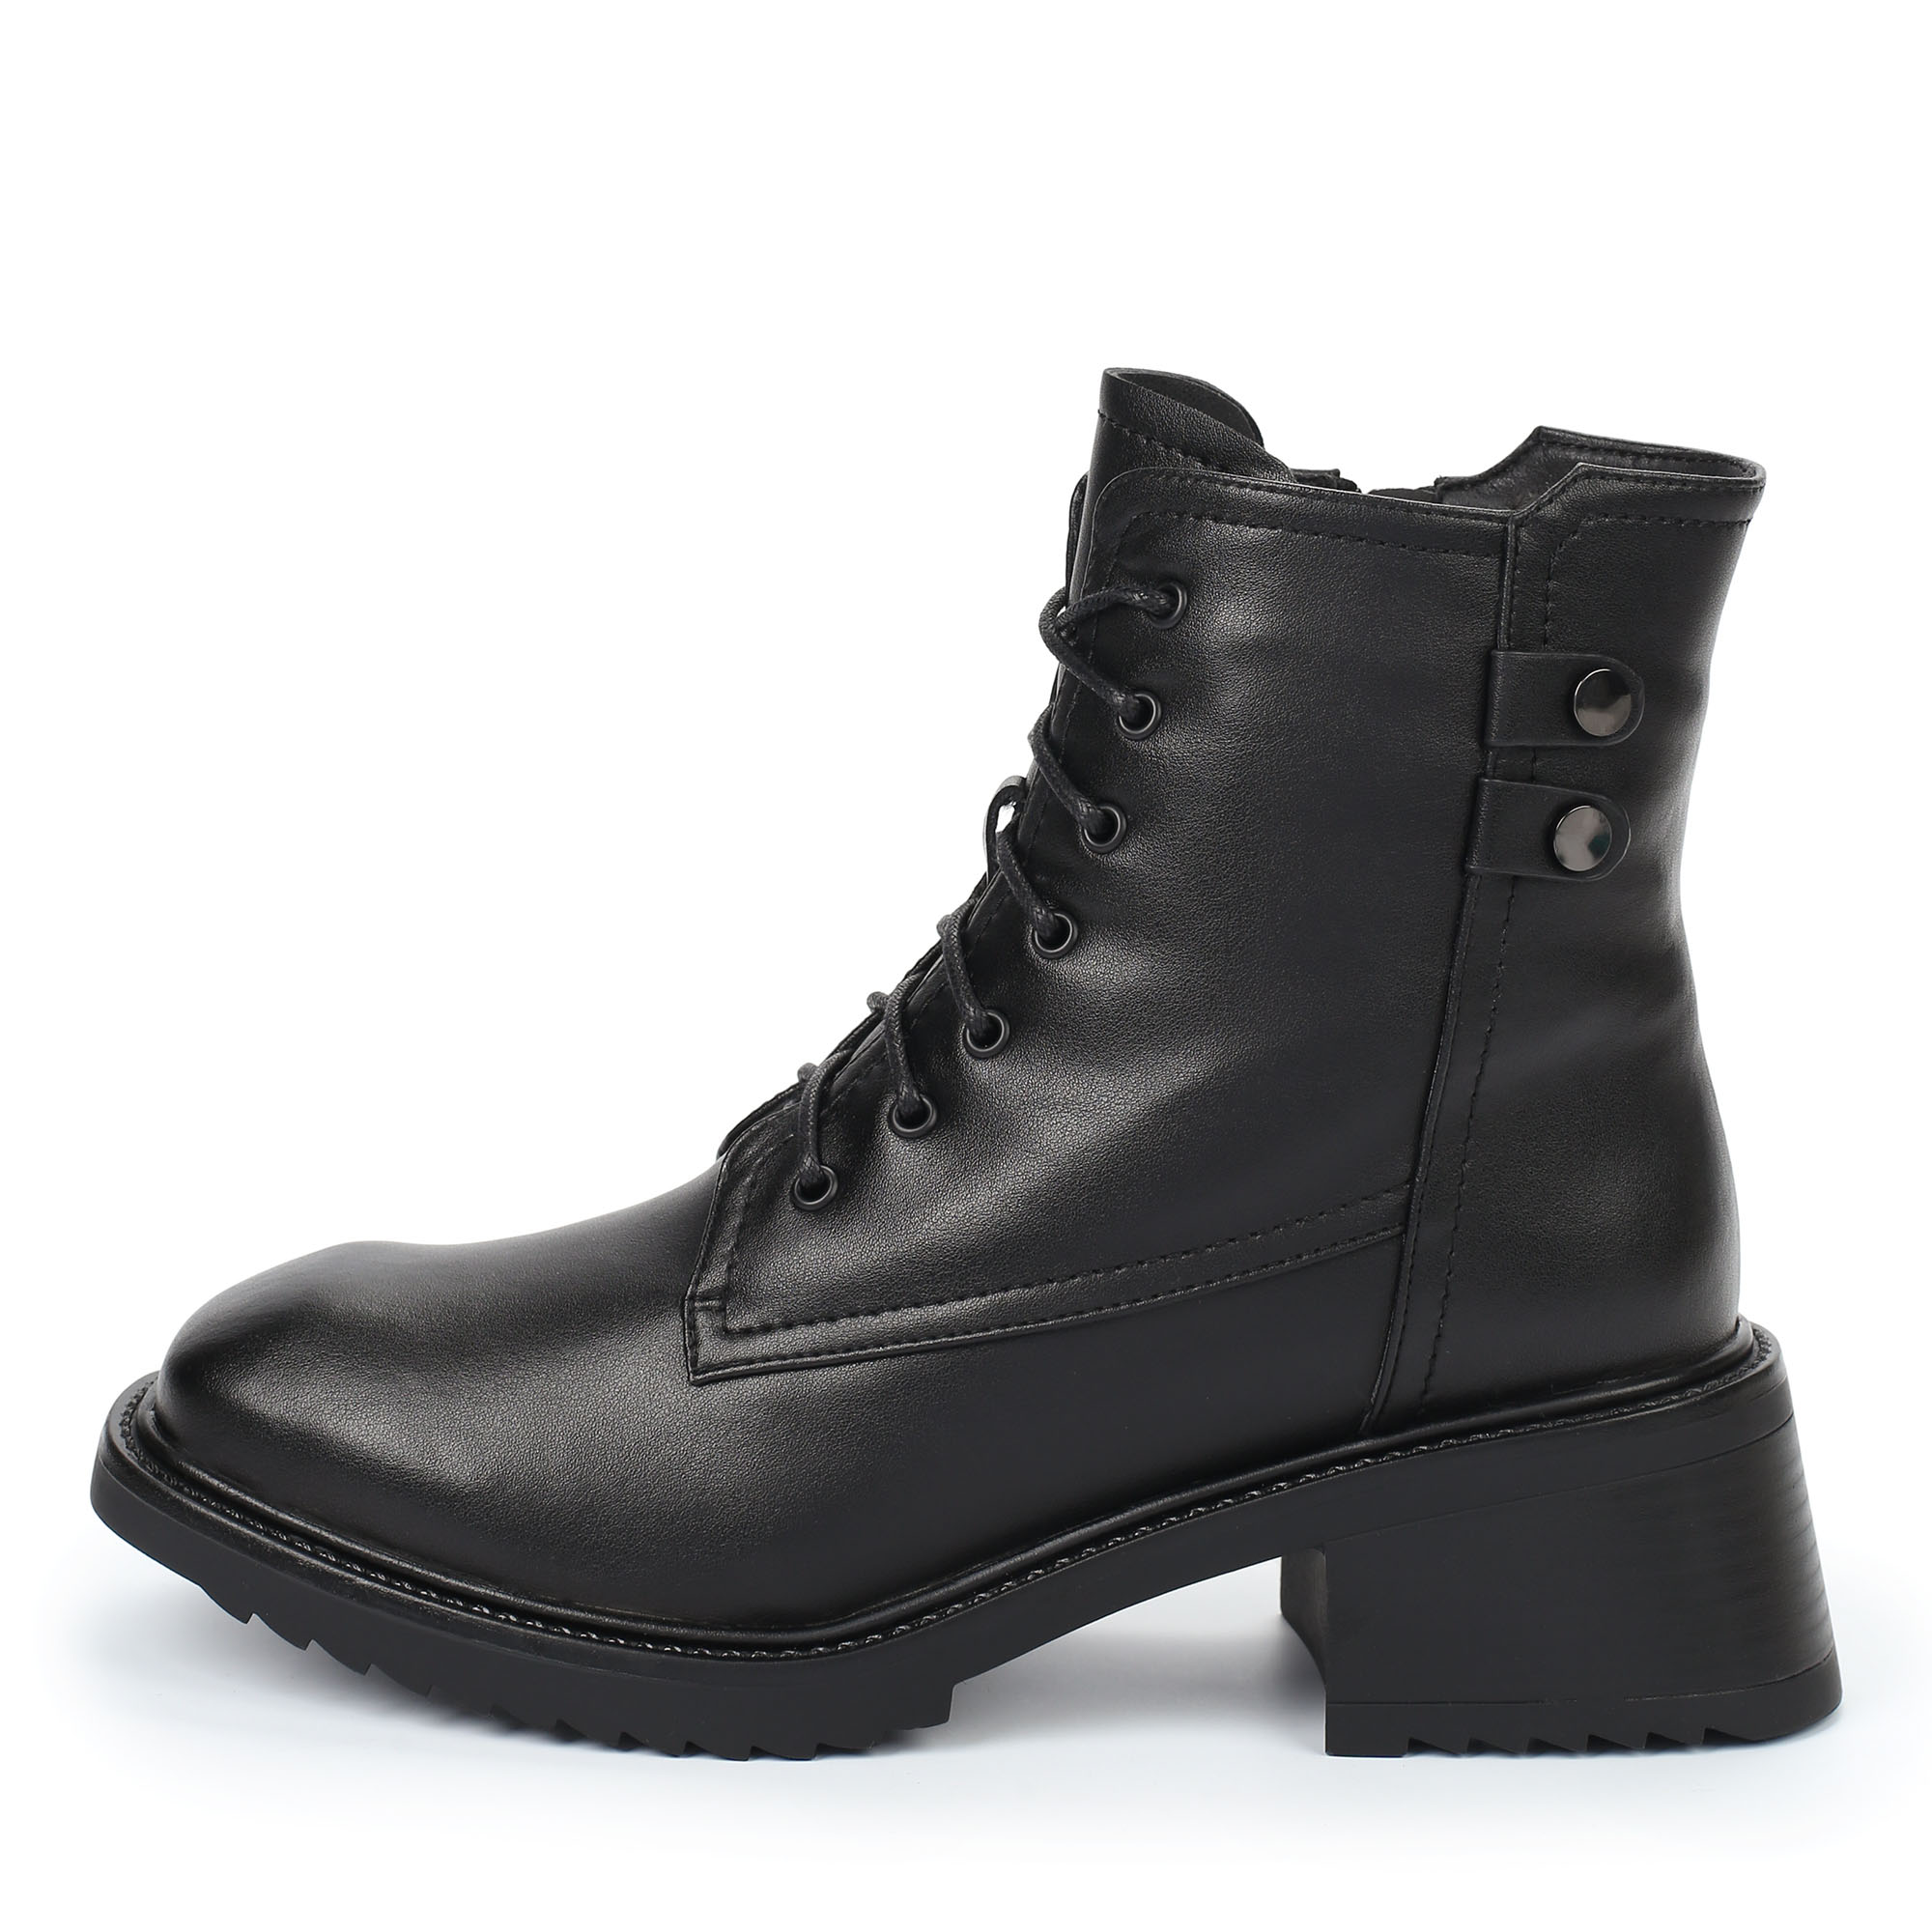 Ботинки Thomas Munz 102-202A-5602, цвет черный, размер 41